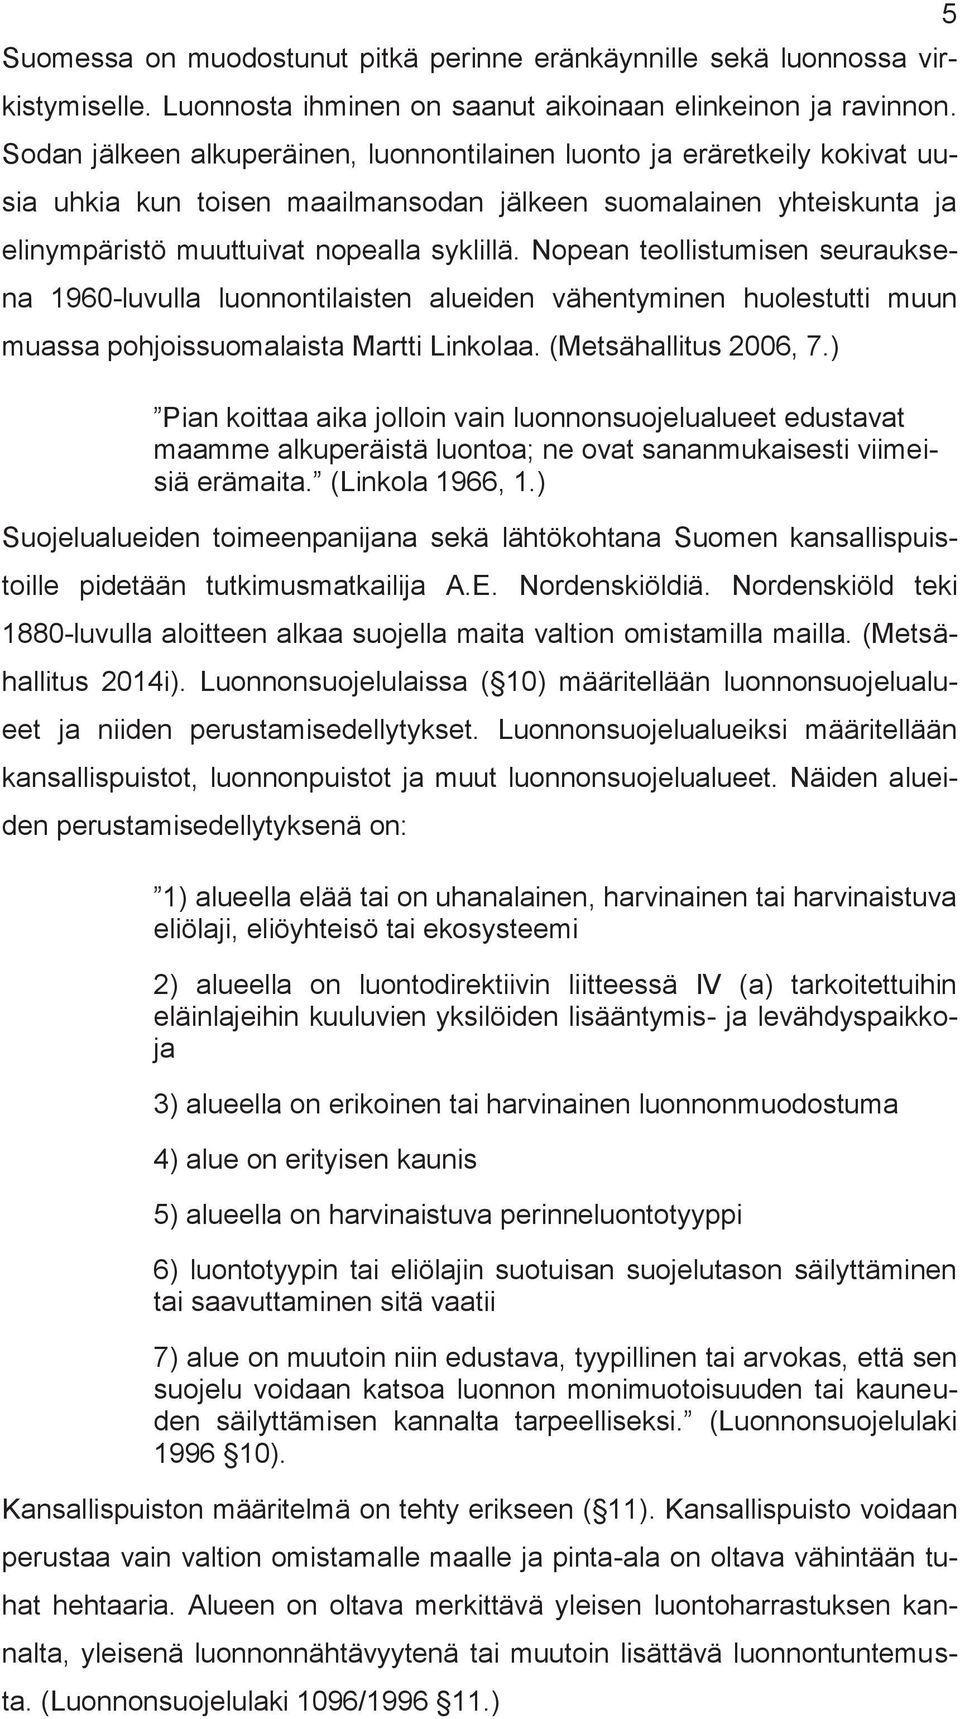 Nopean teollistuisen seurauksena 960-luvulla luonnontilaisten alueiden vähentyinen huolestutti uun uassa pohjoissuoalaista Martti Linkolaa. (Metsähallitus 2006, 7.